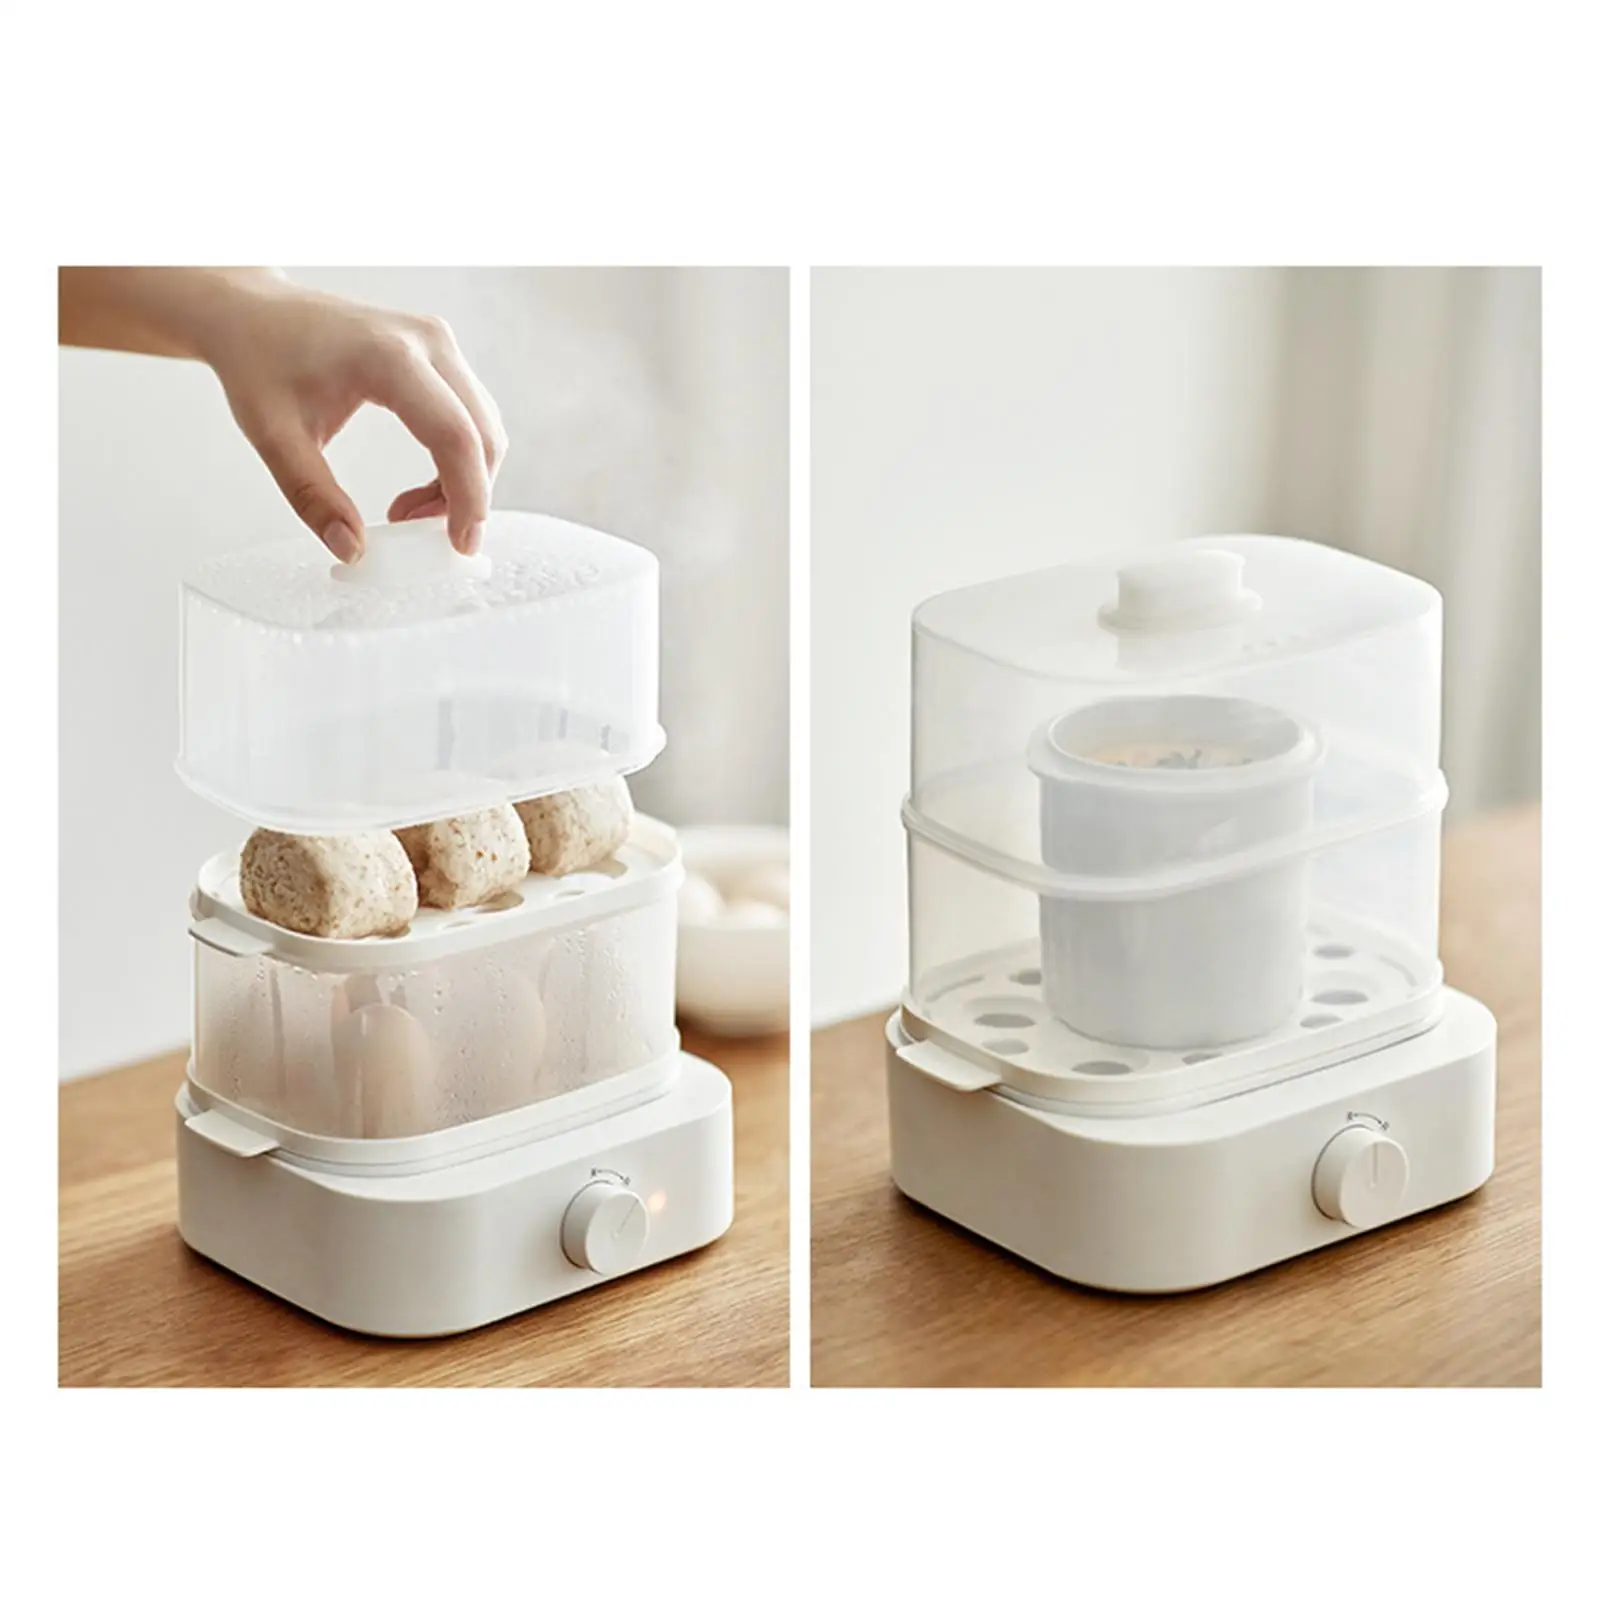 Double Layer Egg Boiler Breakfast Machine Egg Cooker for Travel Appliances Vegetables